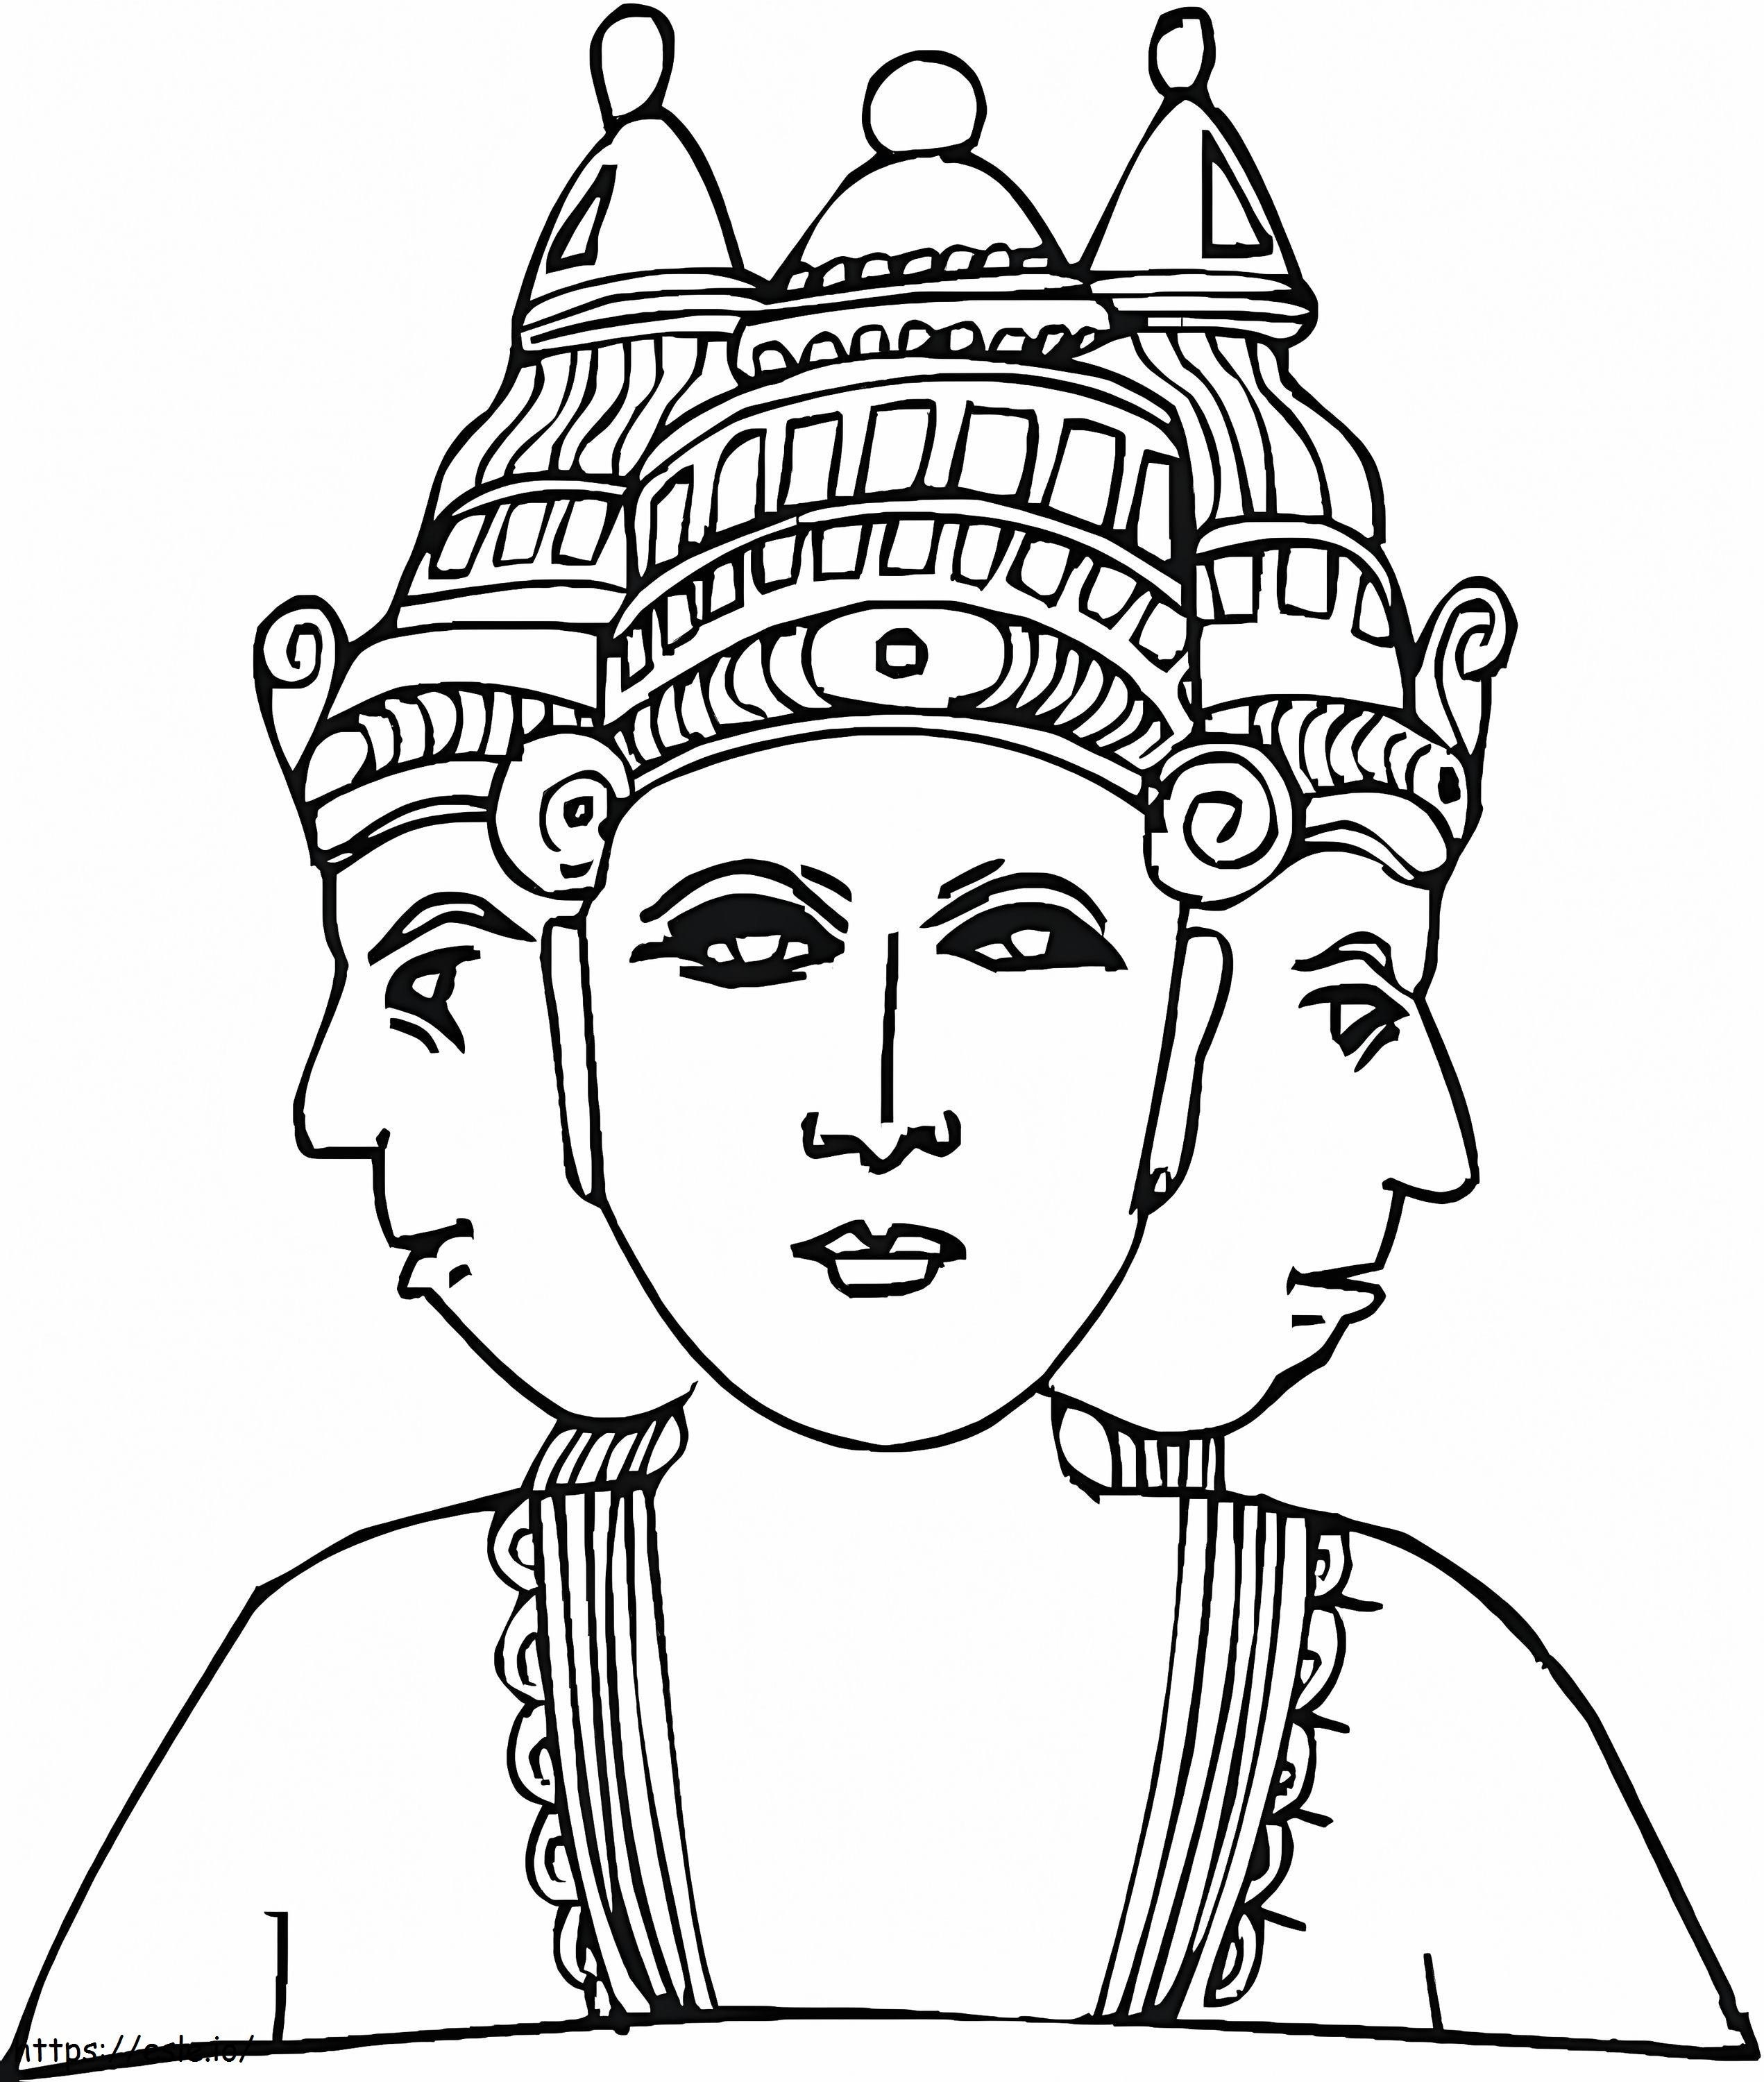 Hindujumala, jolla on kolme päätä värityskuva